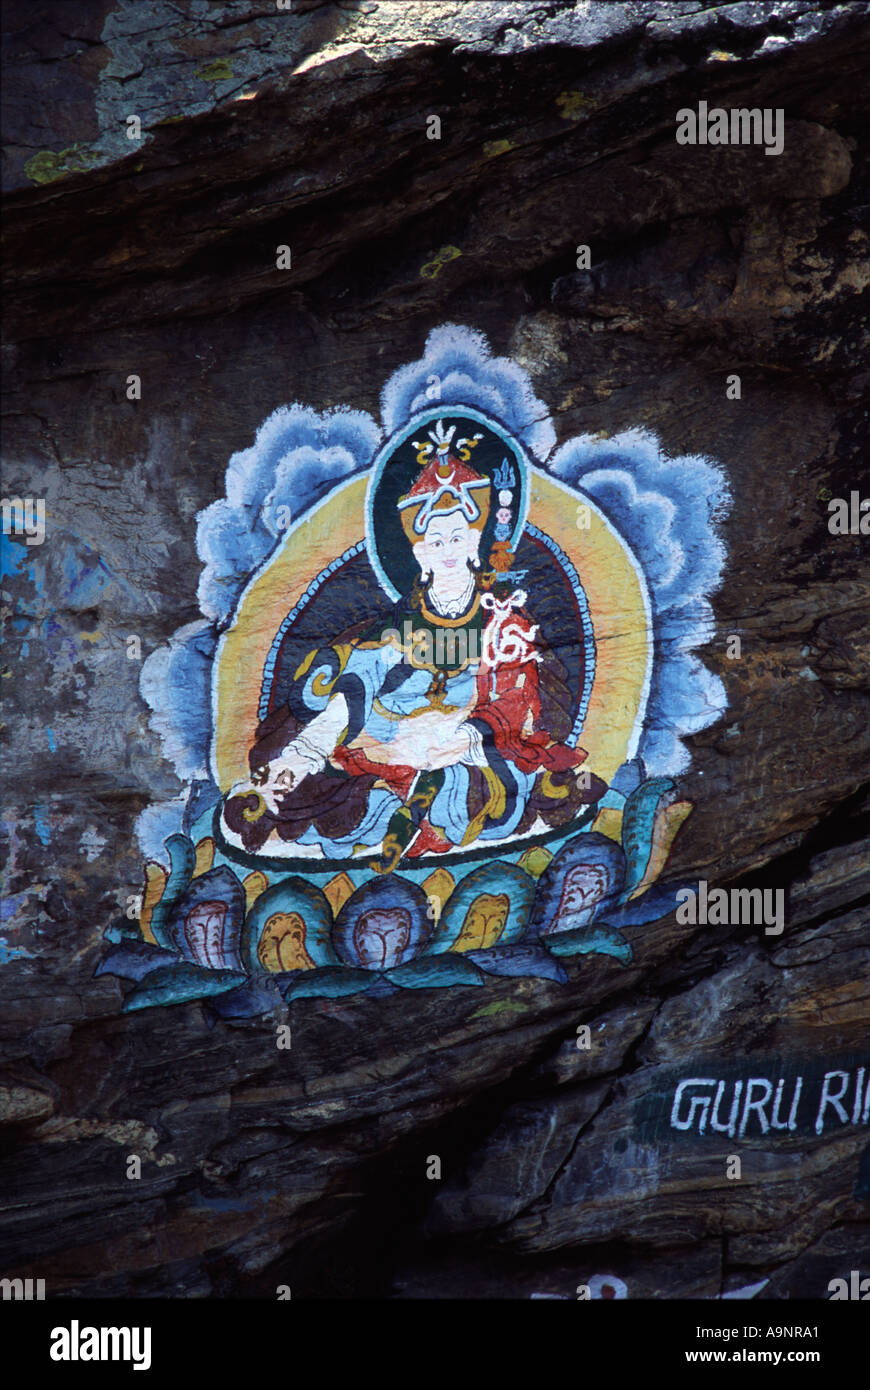 Une peinture bouddhiste sur une falaise près de l'Everest Banque D'Images